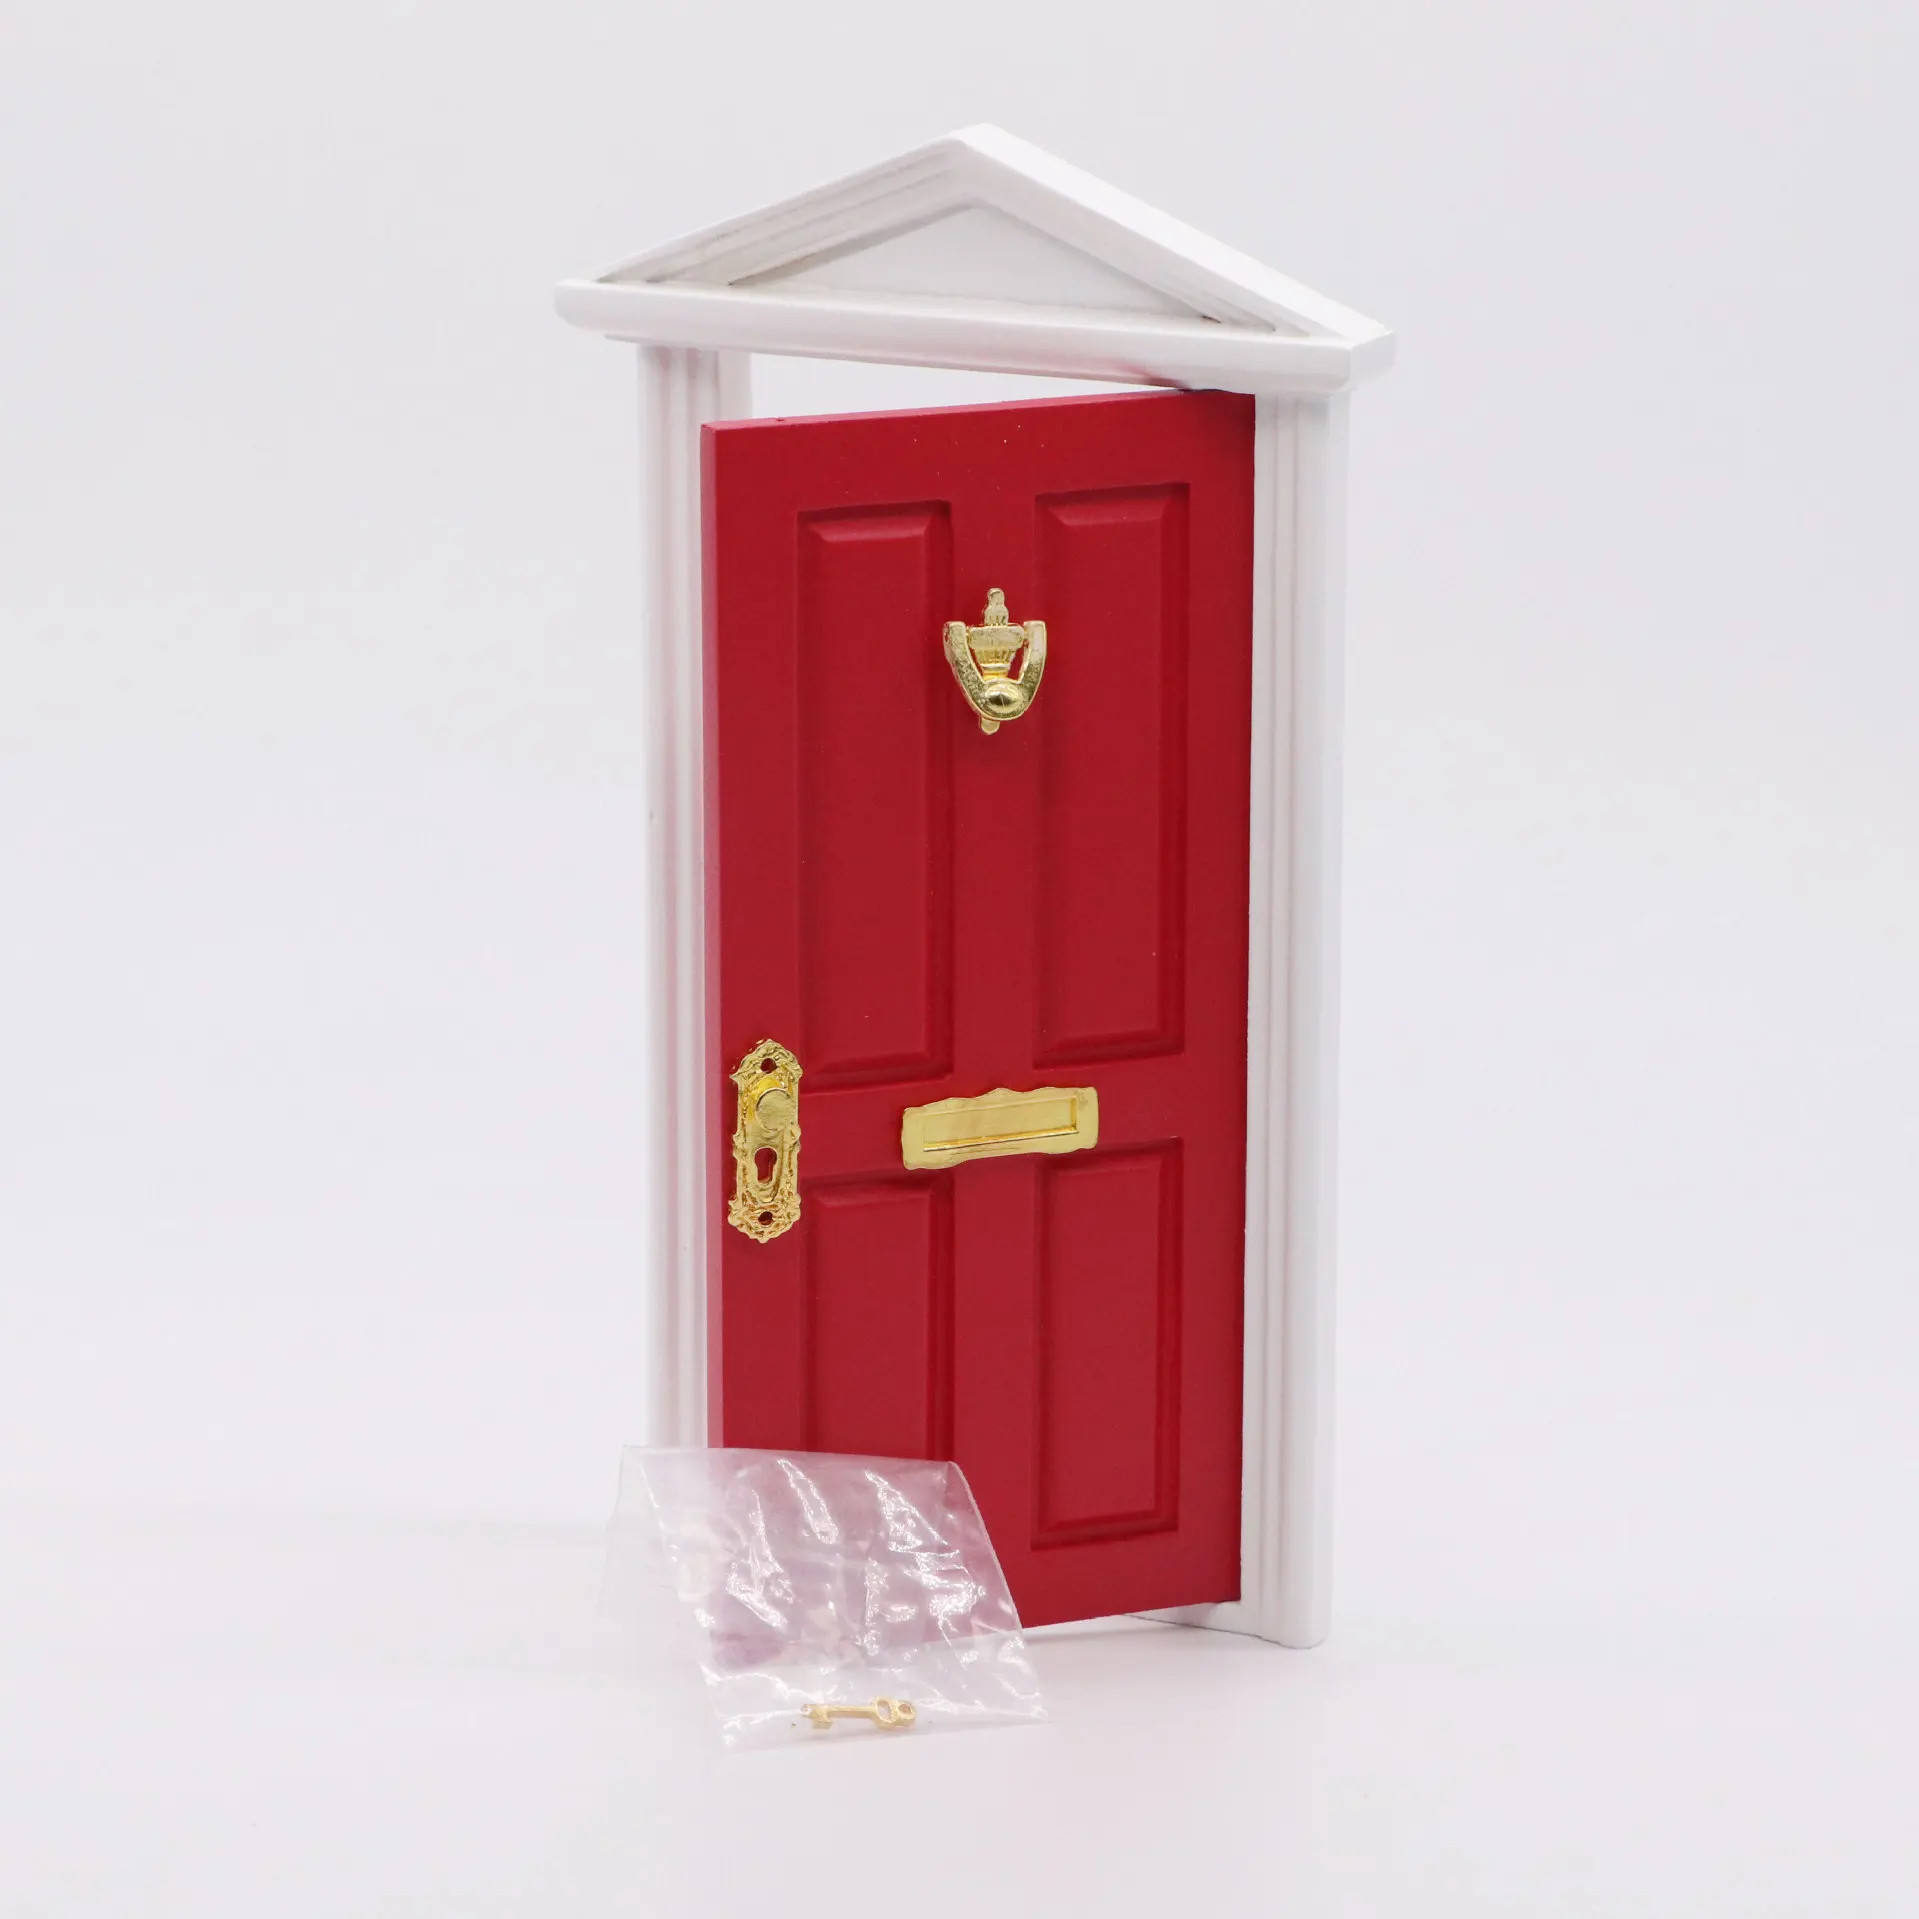 Brass Letterbox porte accessoire échelle 1.12 maison de poupées miniature 